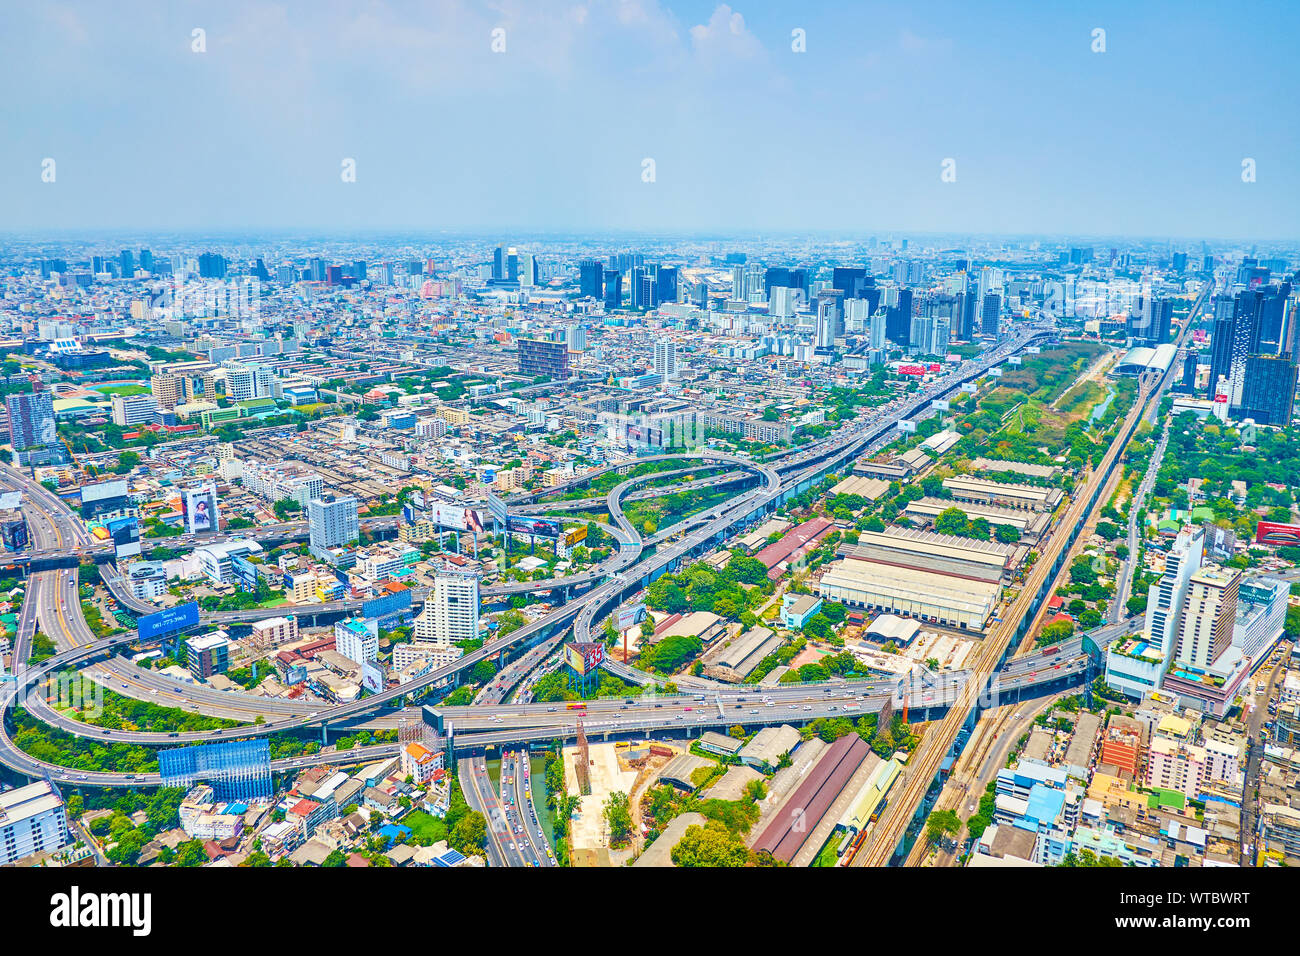 BANGKOK, THAÏLANDE - 24 avril 2019 : la magnifique vue aérienne de la tour Baiyoke II sur l'échangeur de la ville moderne avec de nombreux élèves de separatio Banque D'Images